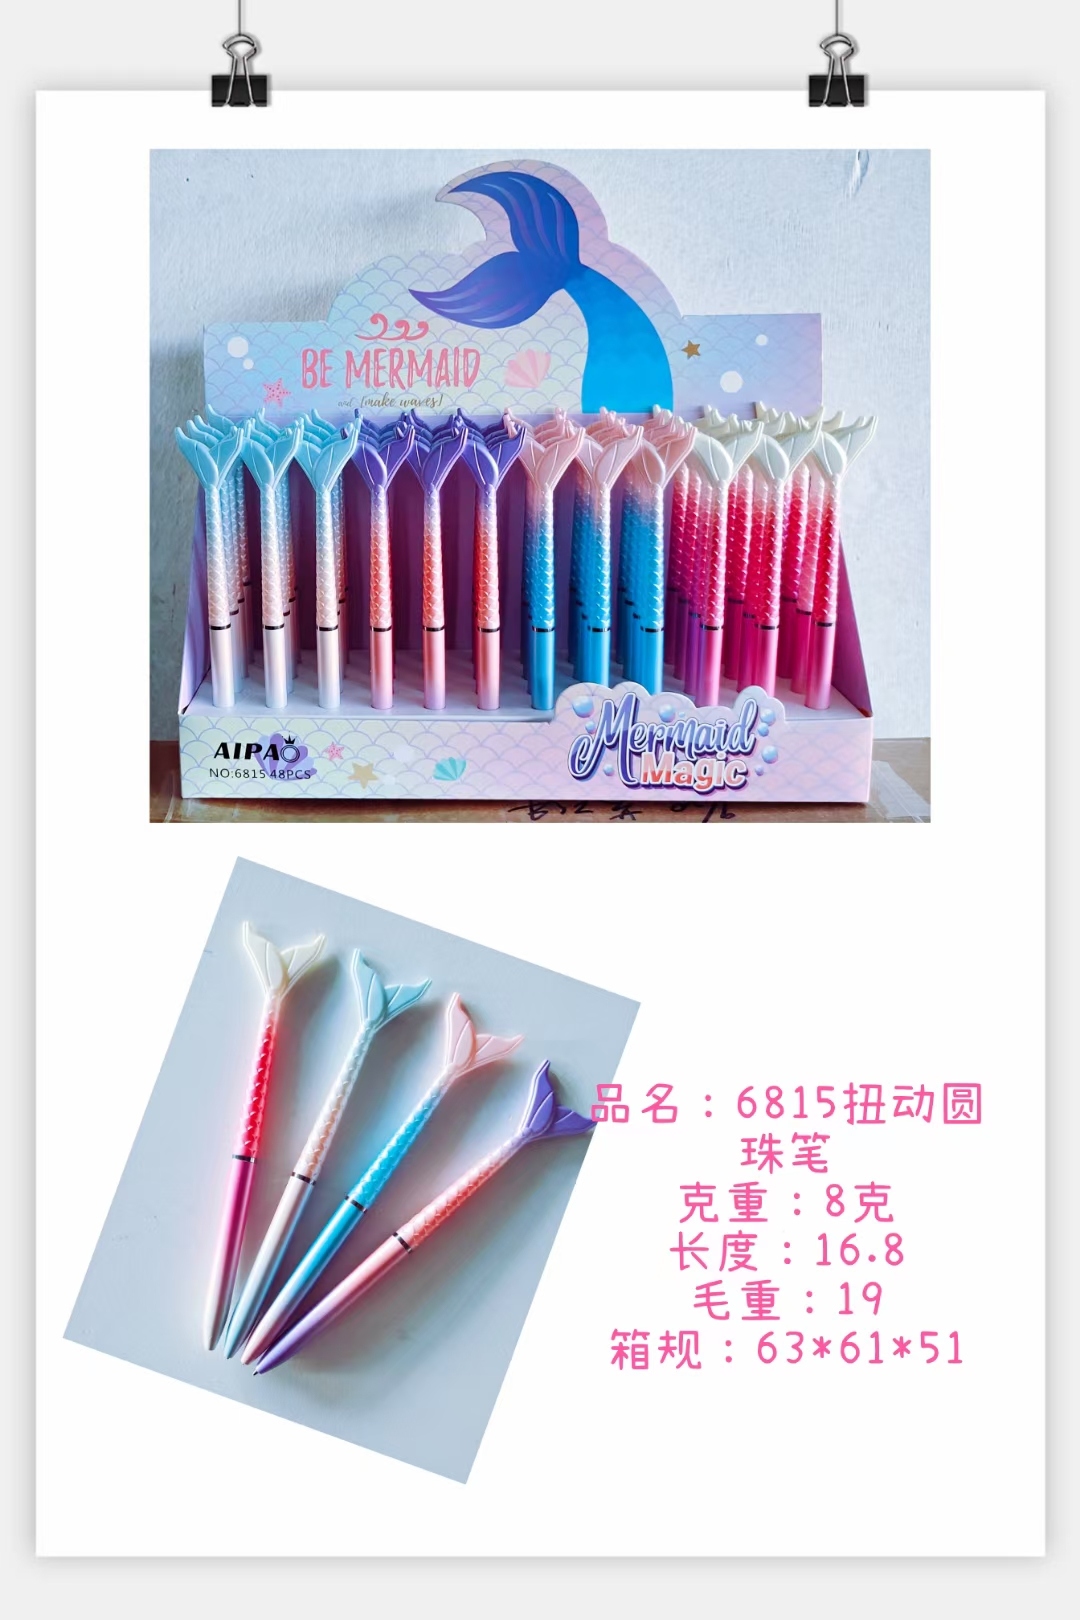  Uv New modeling pen UV Mermaid craft pen lovely advertising gift pen